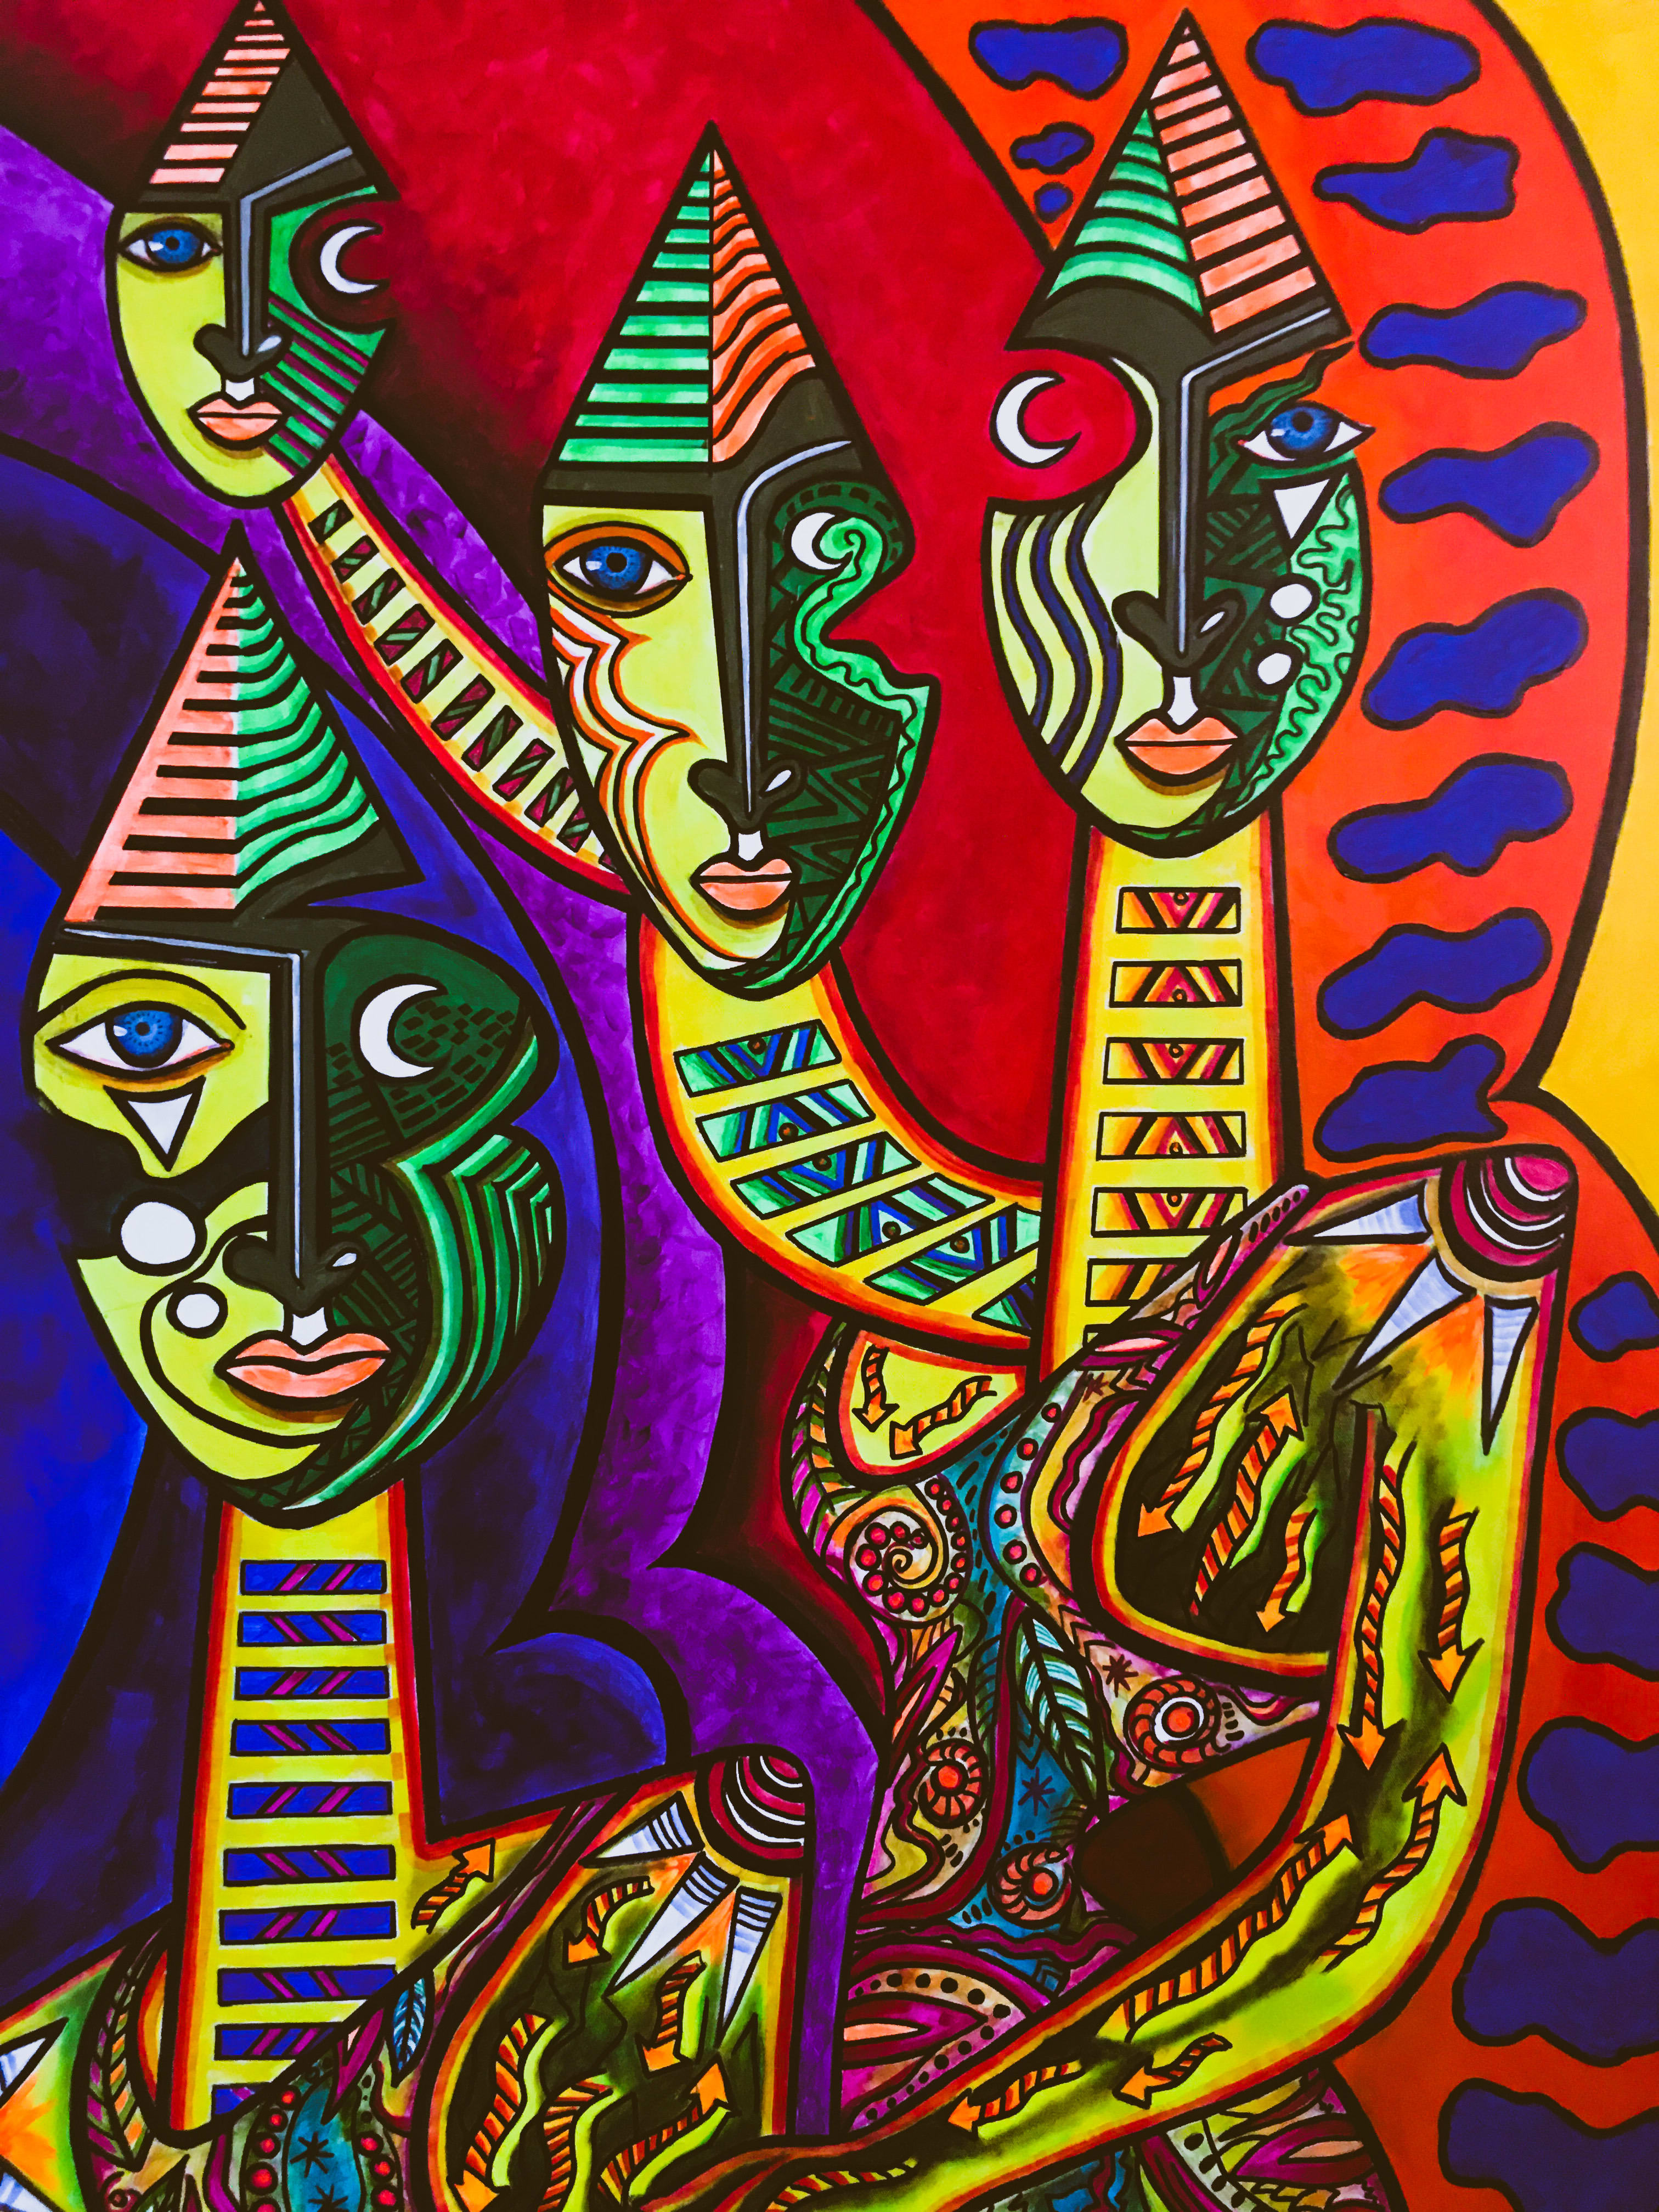 Picasso Like Original Art by Joe Luna